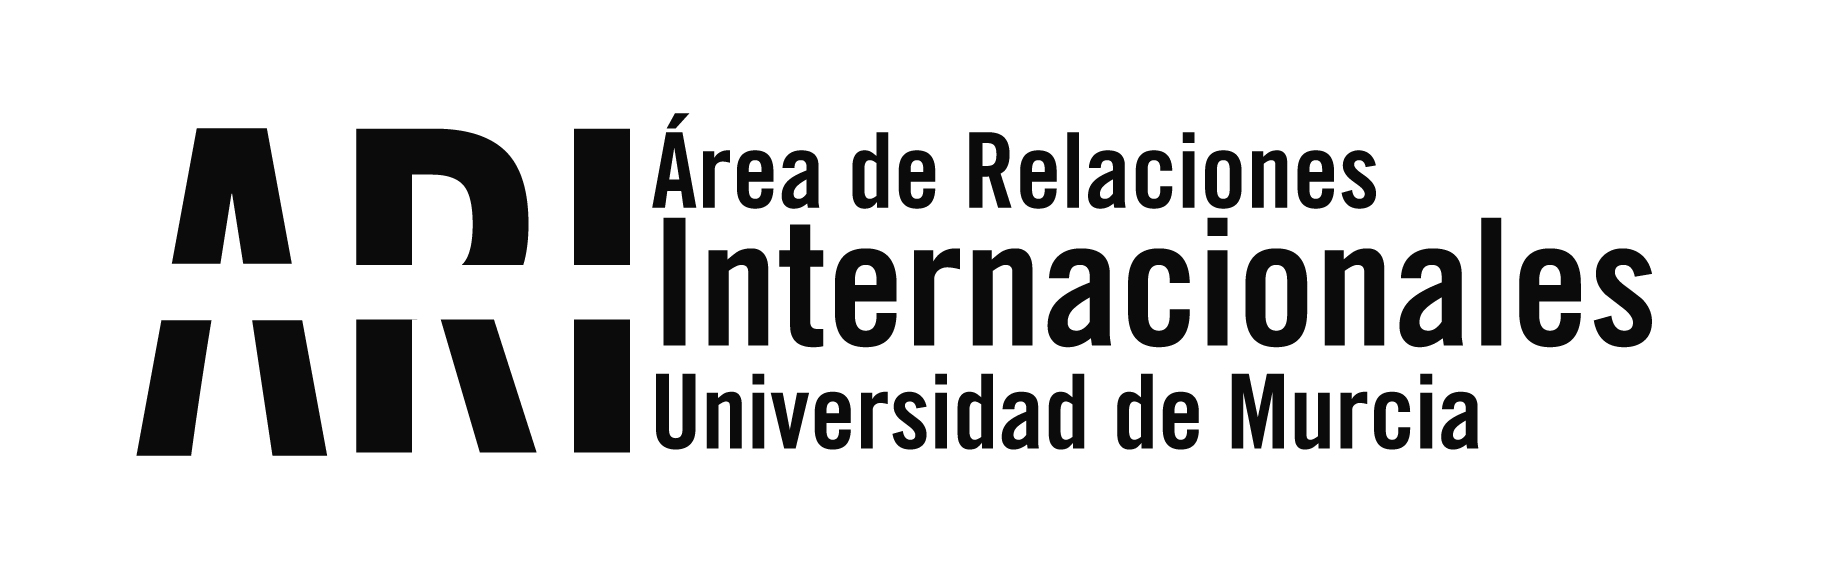 Bienvenida Internacional de la Universidad de Murcia del 2º cuatrimestre del curso 2016/17 - Área de Relaciones Internacionales